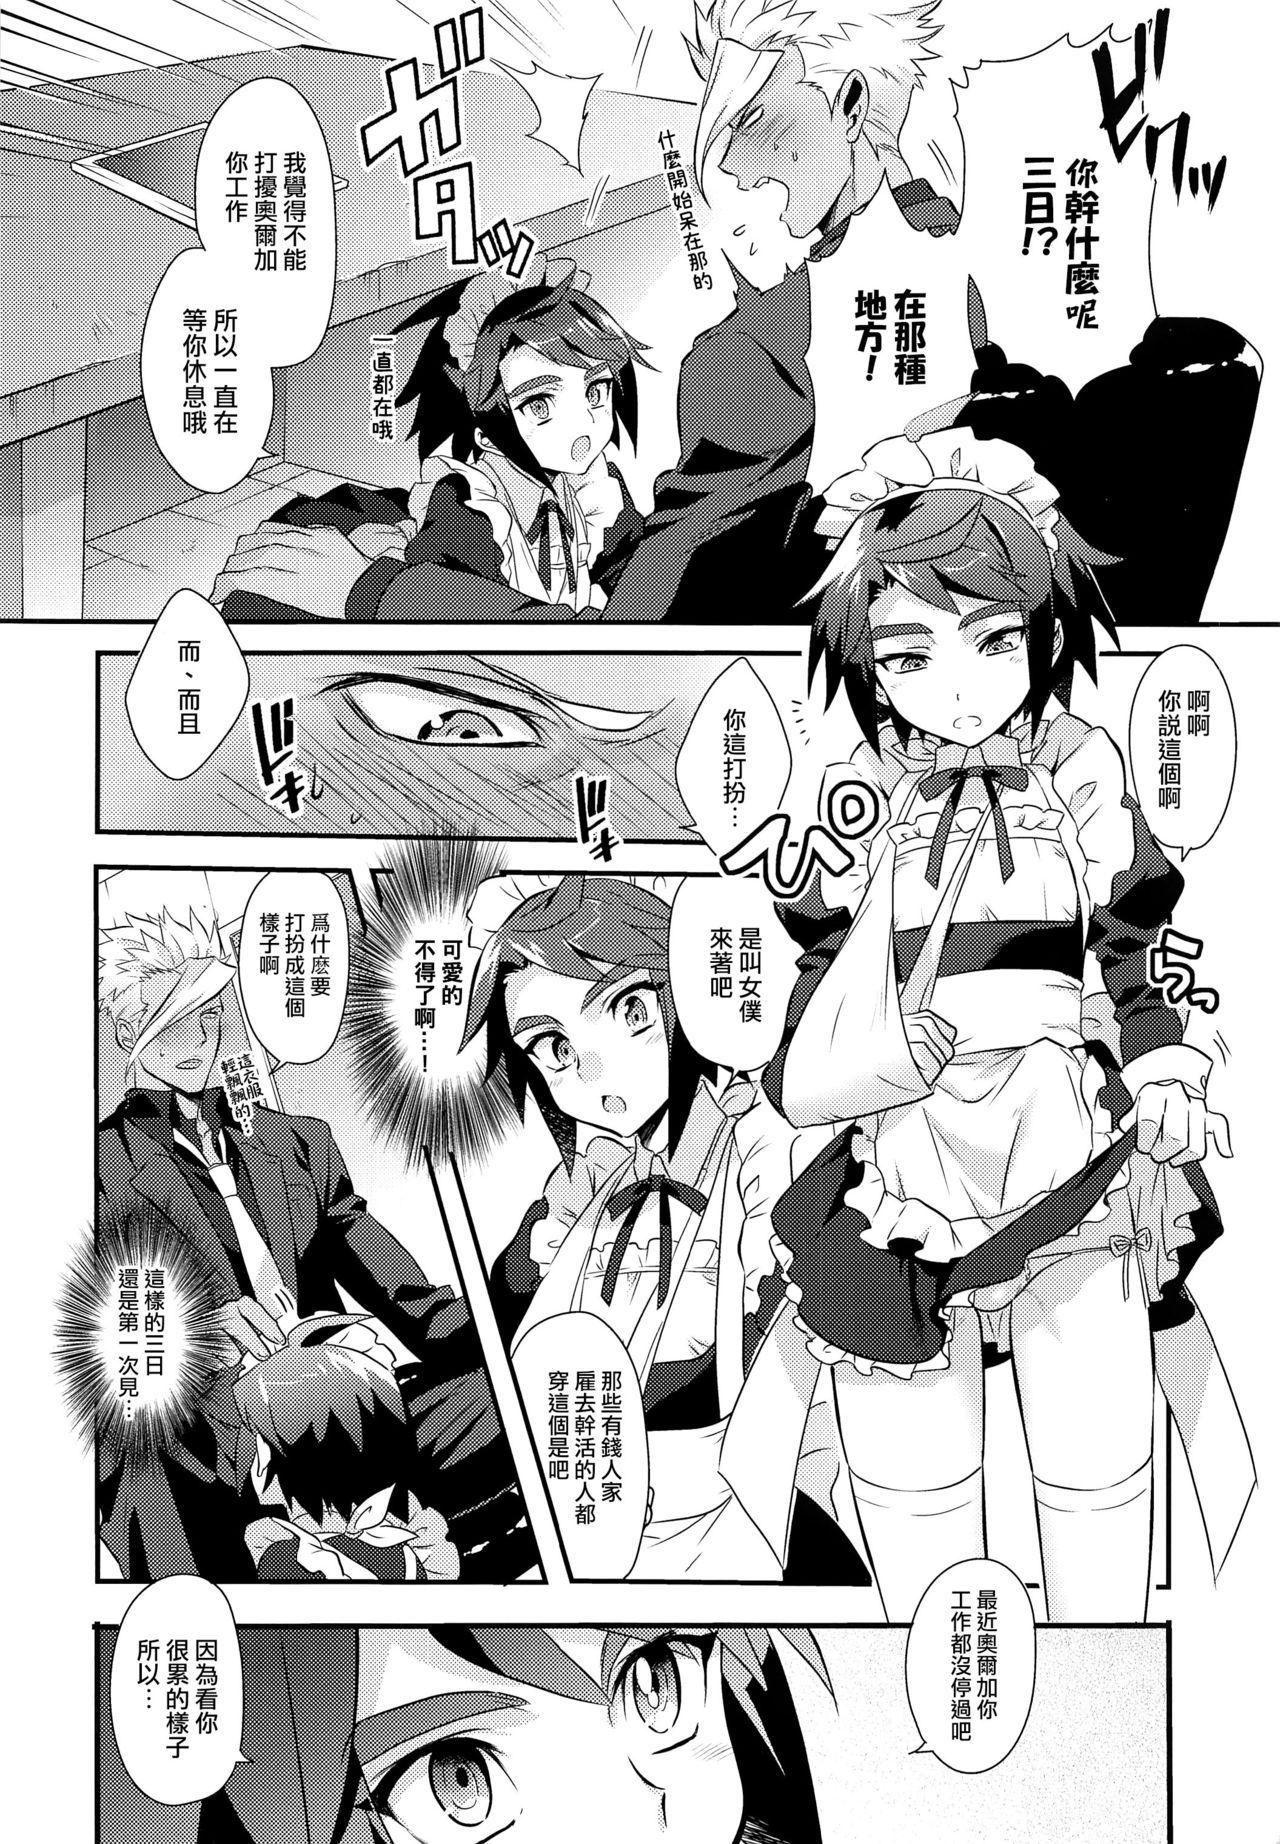 Stranger Uchi no Pilot no Yousu ga Okashii! - Mobile suit gundam tekketsu no orphans Brasileiro - Page 5